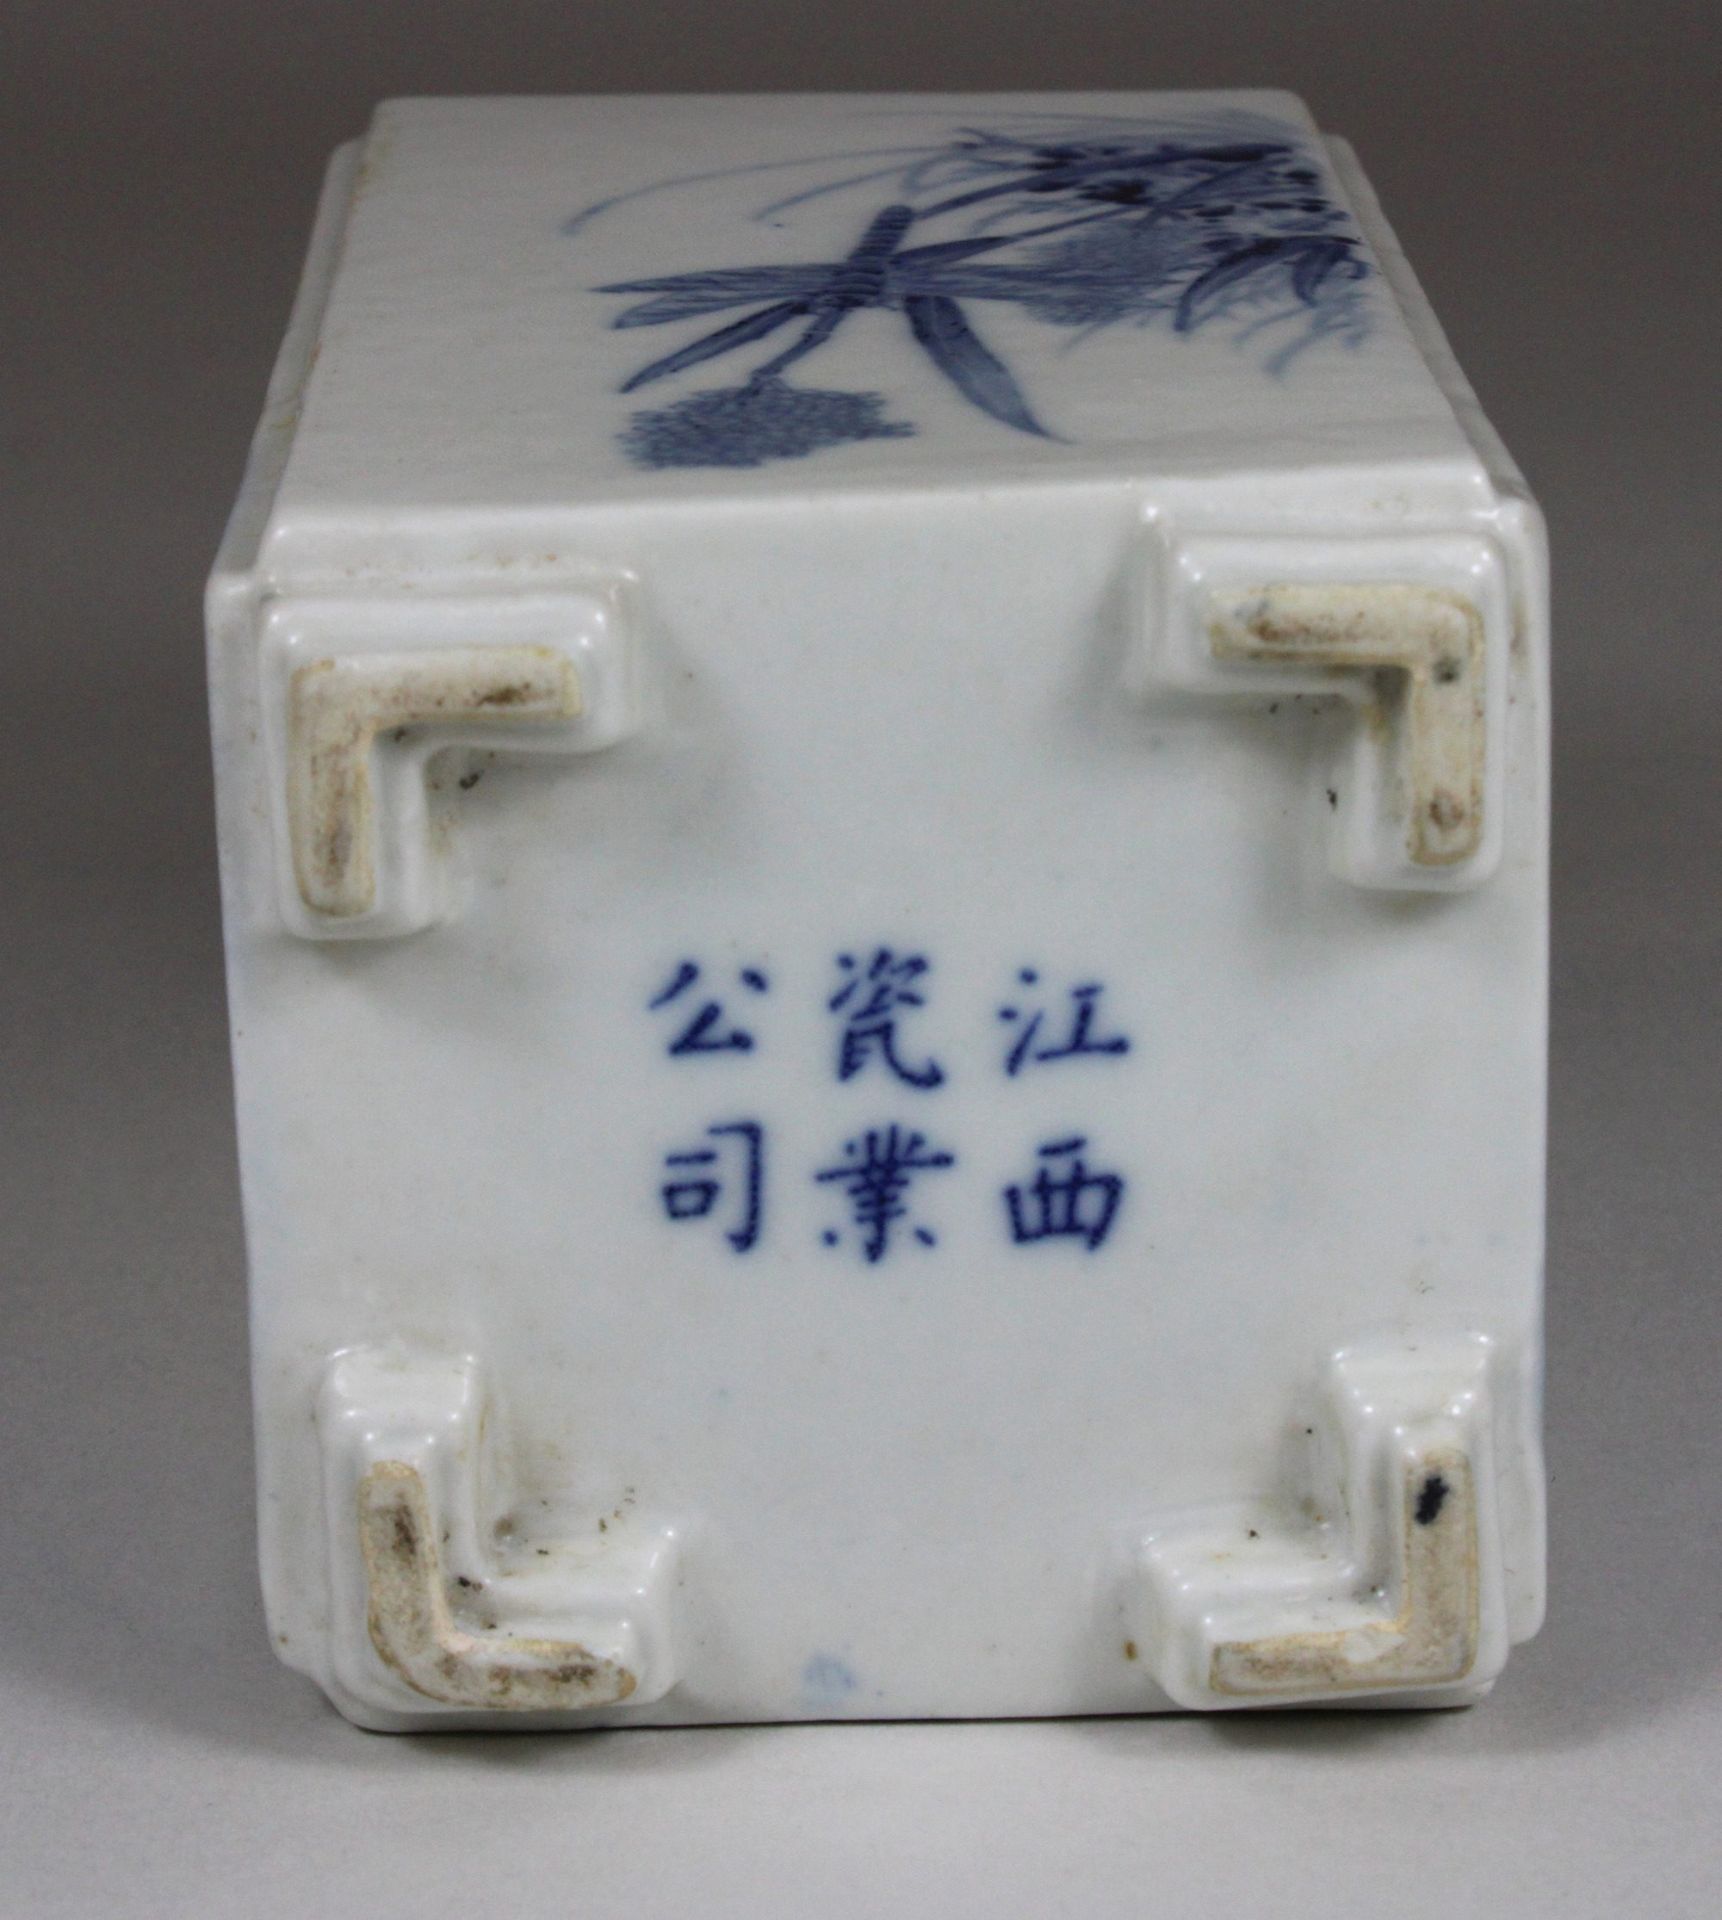 Chinesische quadratische Vase in Blau - Weiß, Figurative und florale Darstellung, H 12 cm, B 7 cm, - Image 4 of 5